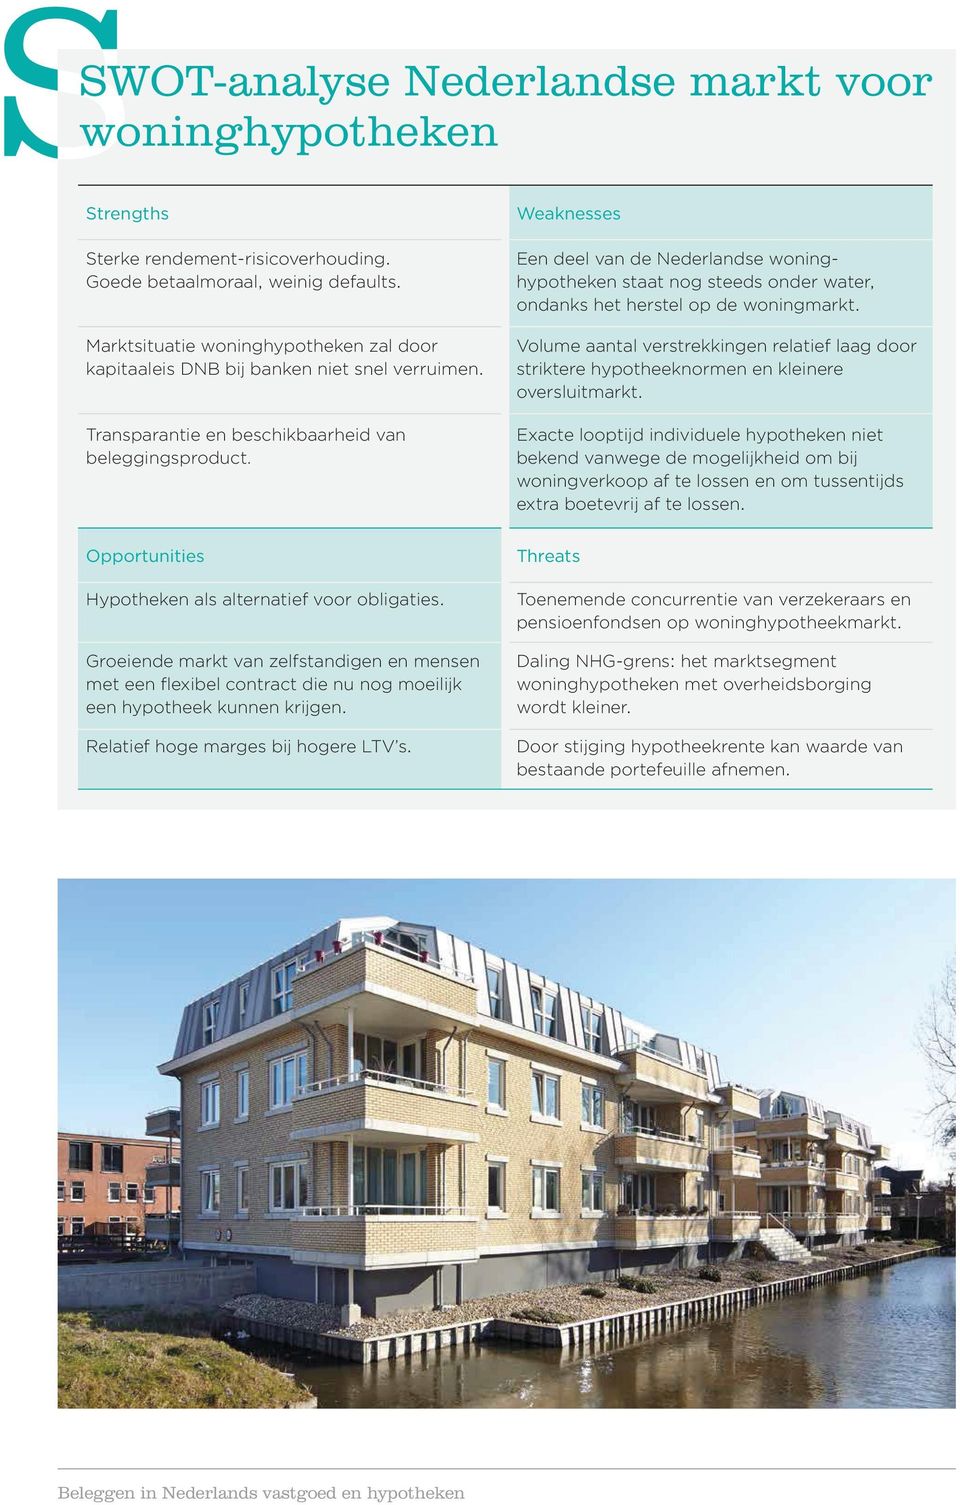 Weaknesses Een deel van de Nederlandse woninghypotheken staat nog steeds onder water, ondanks het herstel op de woningmarkt.